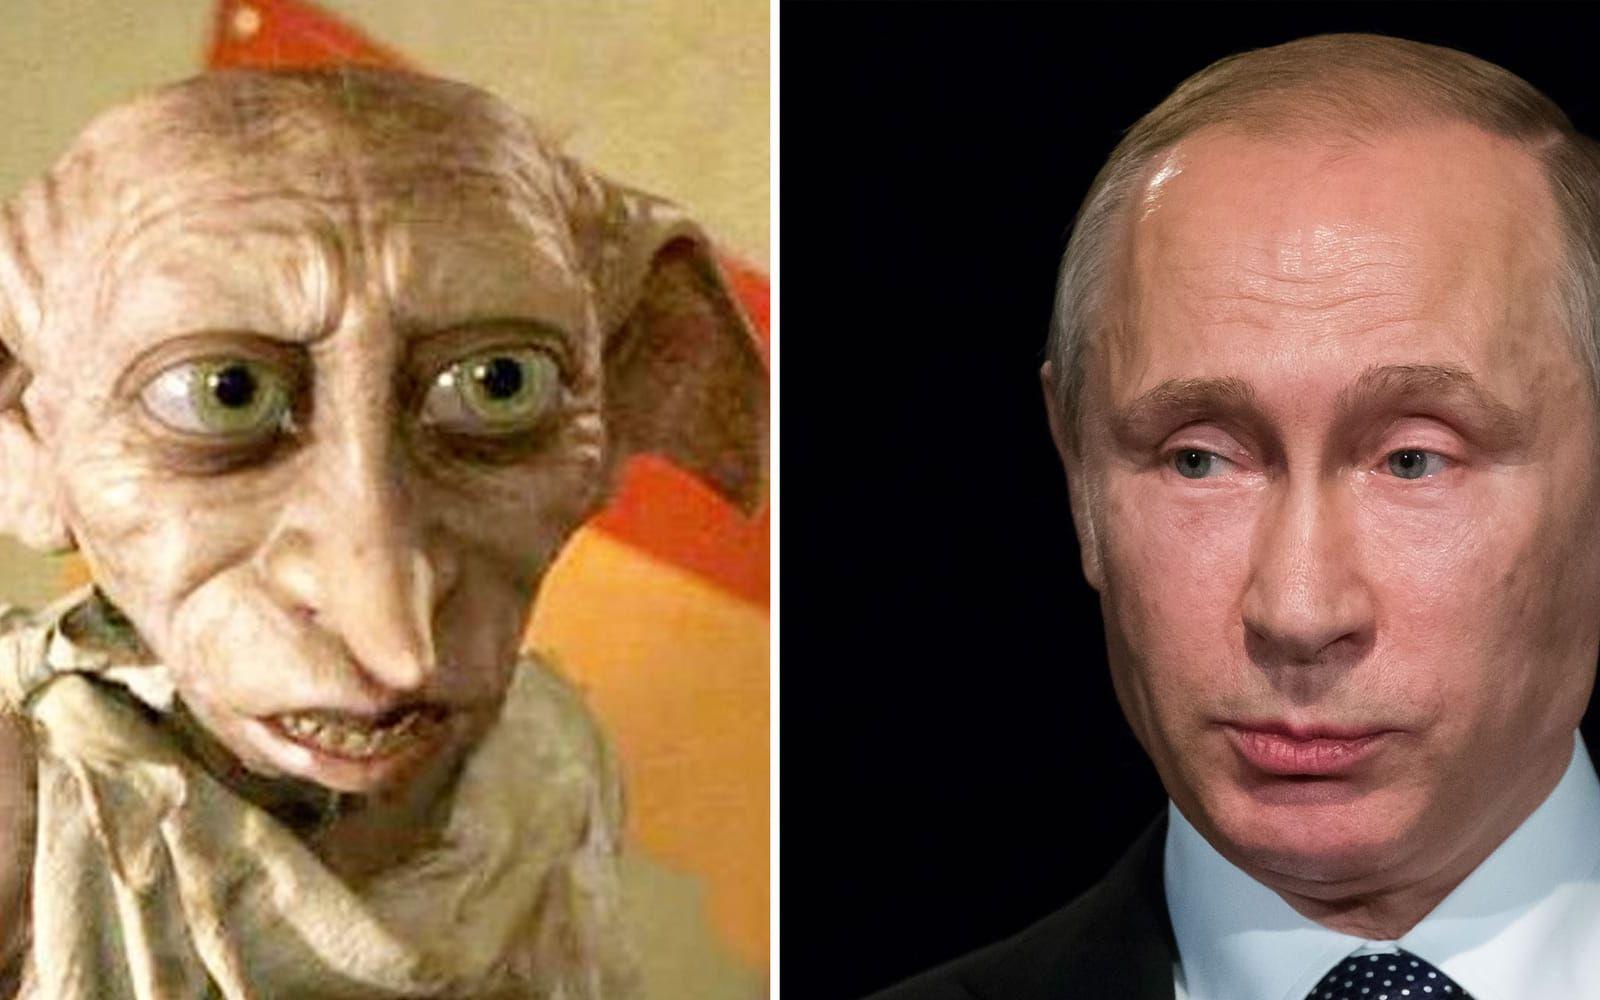 I samma tidning jämförde han Rysslands president Vladimir Putin vid husalfen Dobby från Harry Potter, med tillägget att han dessutom är en hänsynslös, manipulativ tyrann.